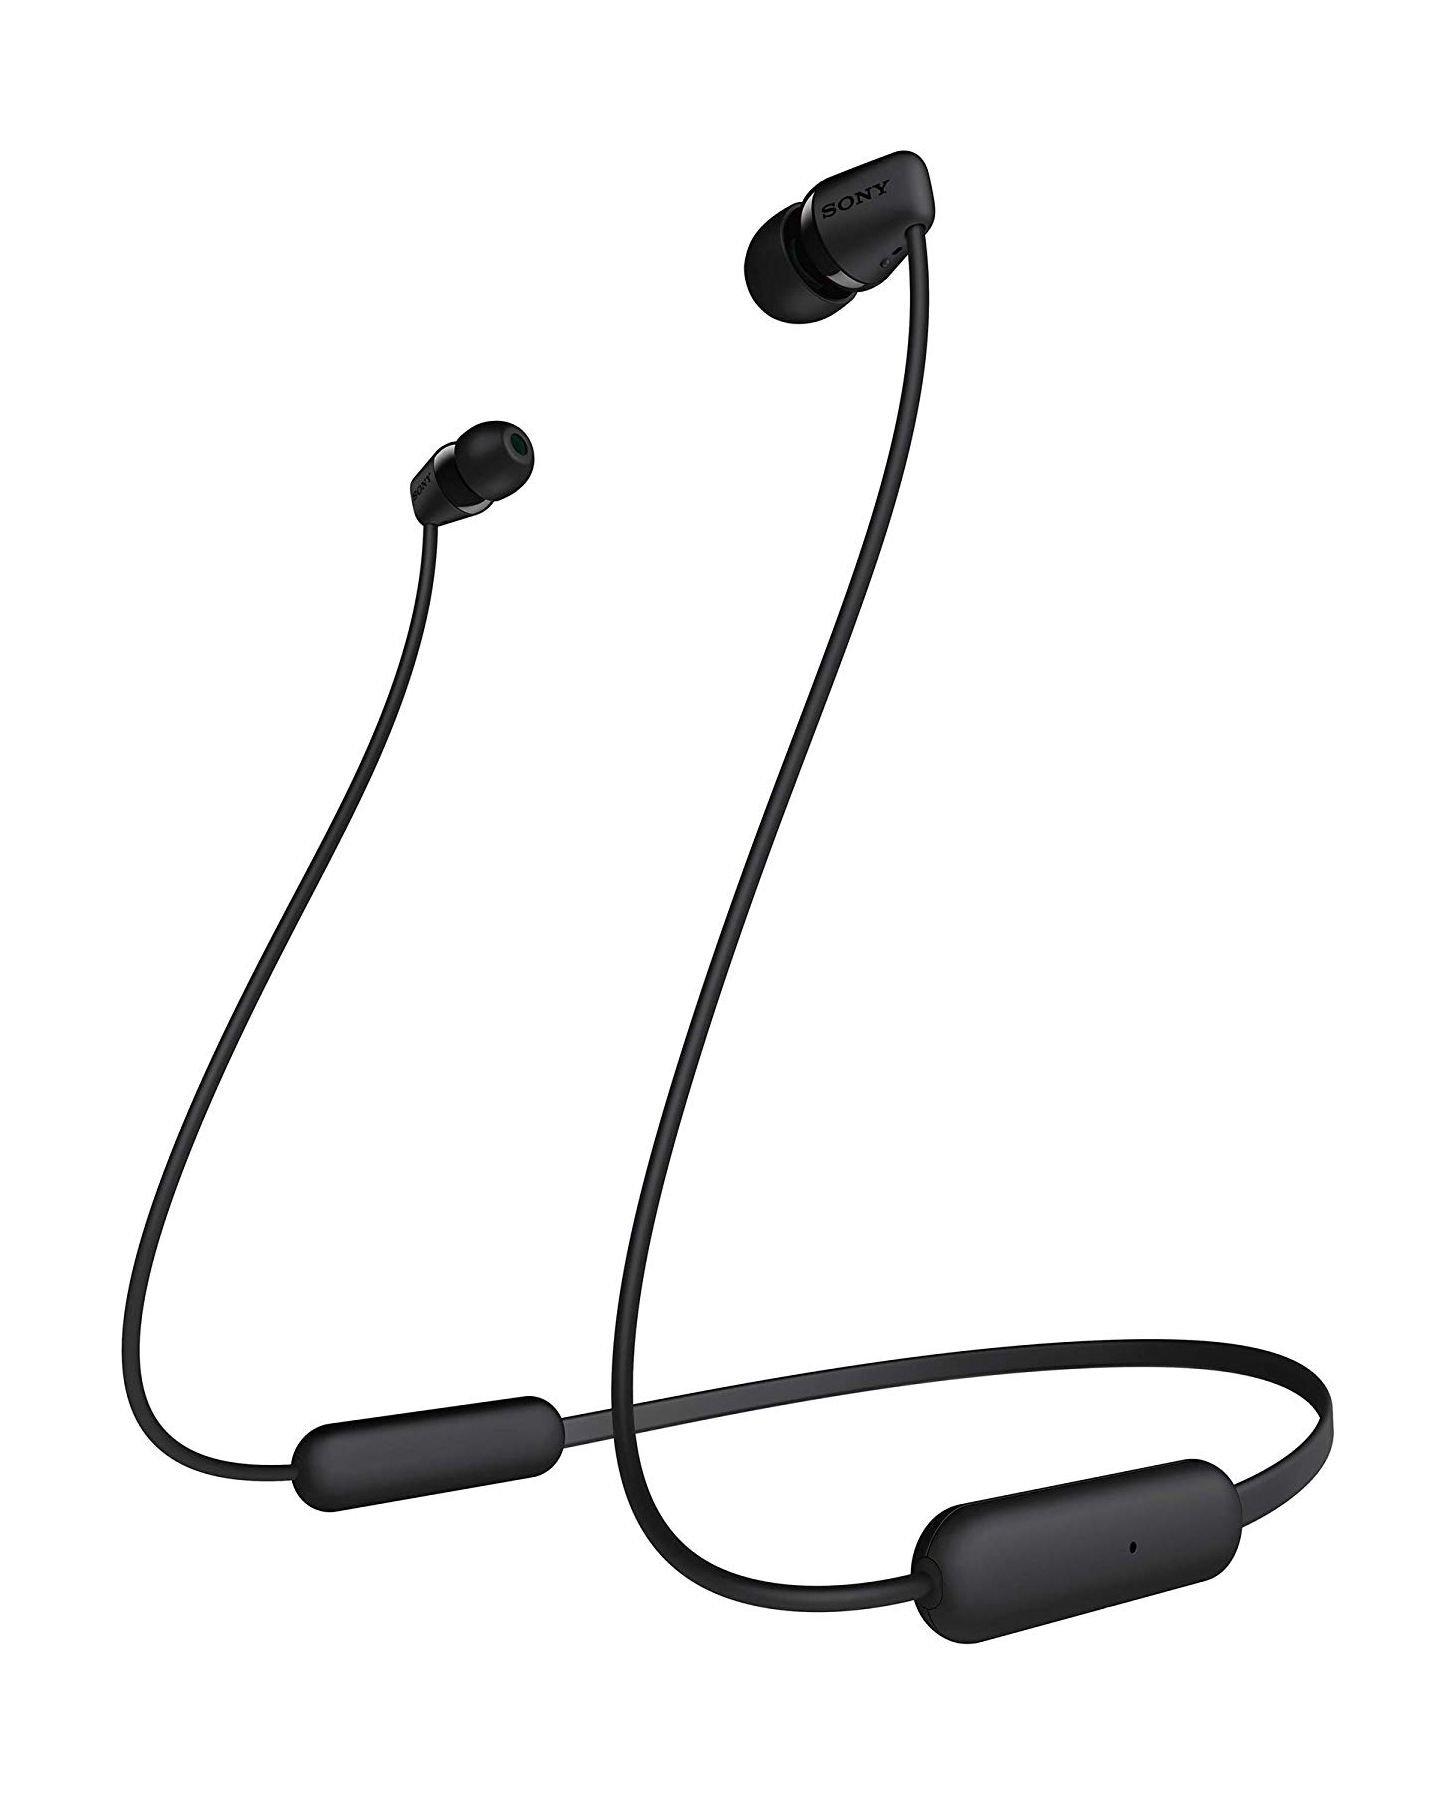 Buy Sony wi-c200 wireless in-ear headphones - black in Saudi Arabia